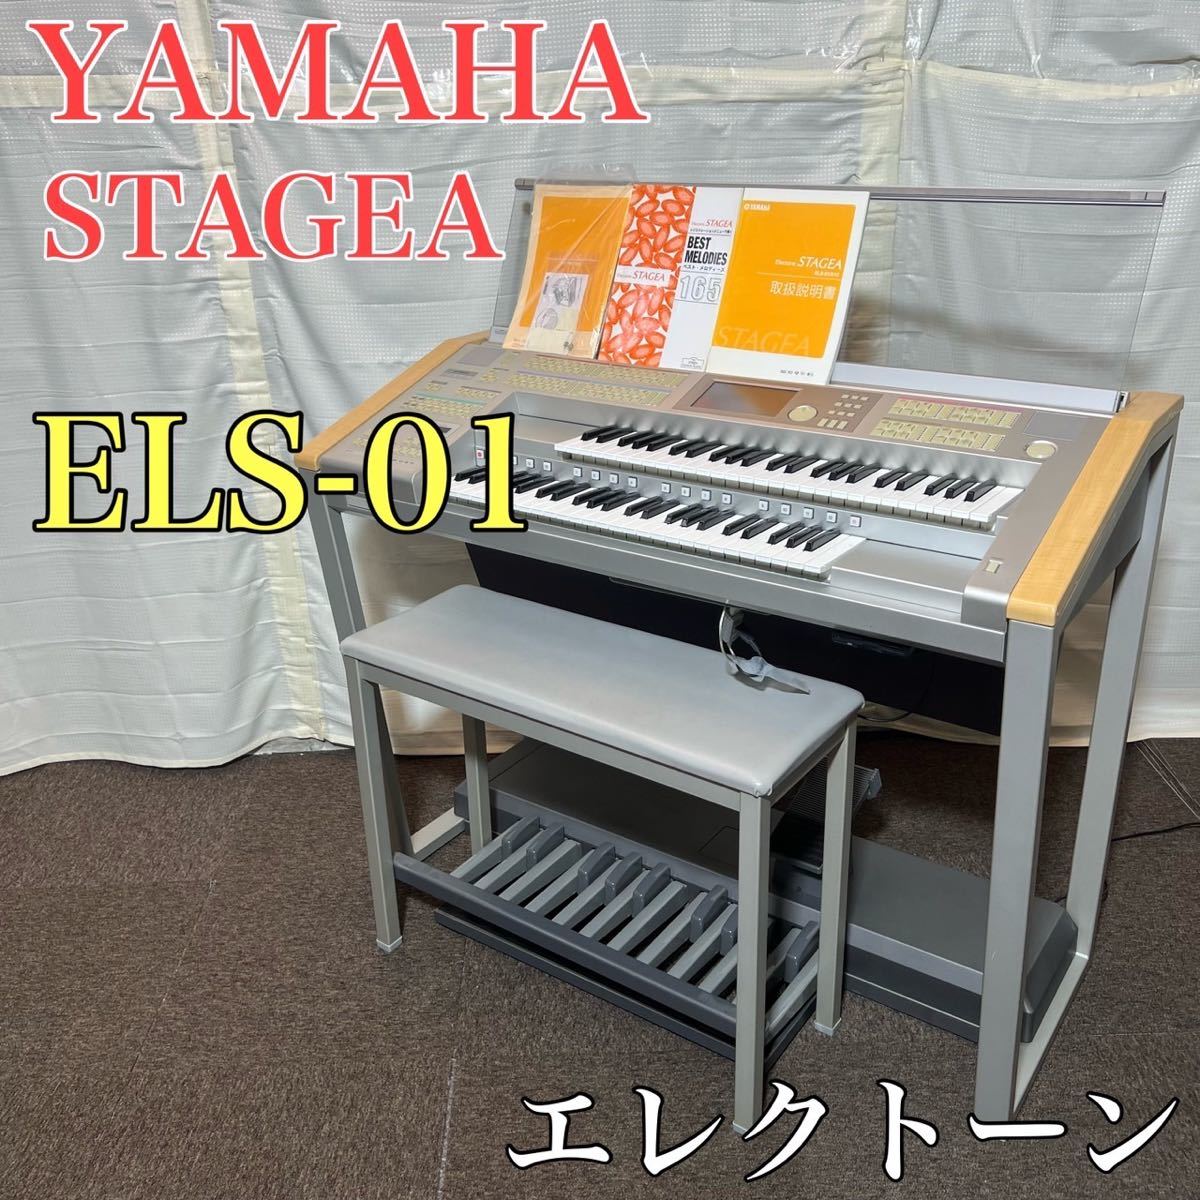 宇宙の香り YAMAHA エレクトーン STAGEA ELS-01 音楽 楽器 A0292 通販